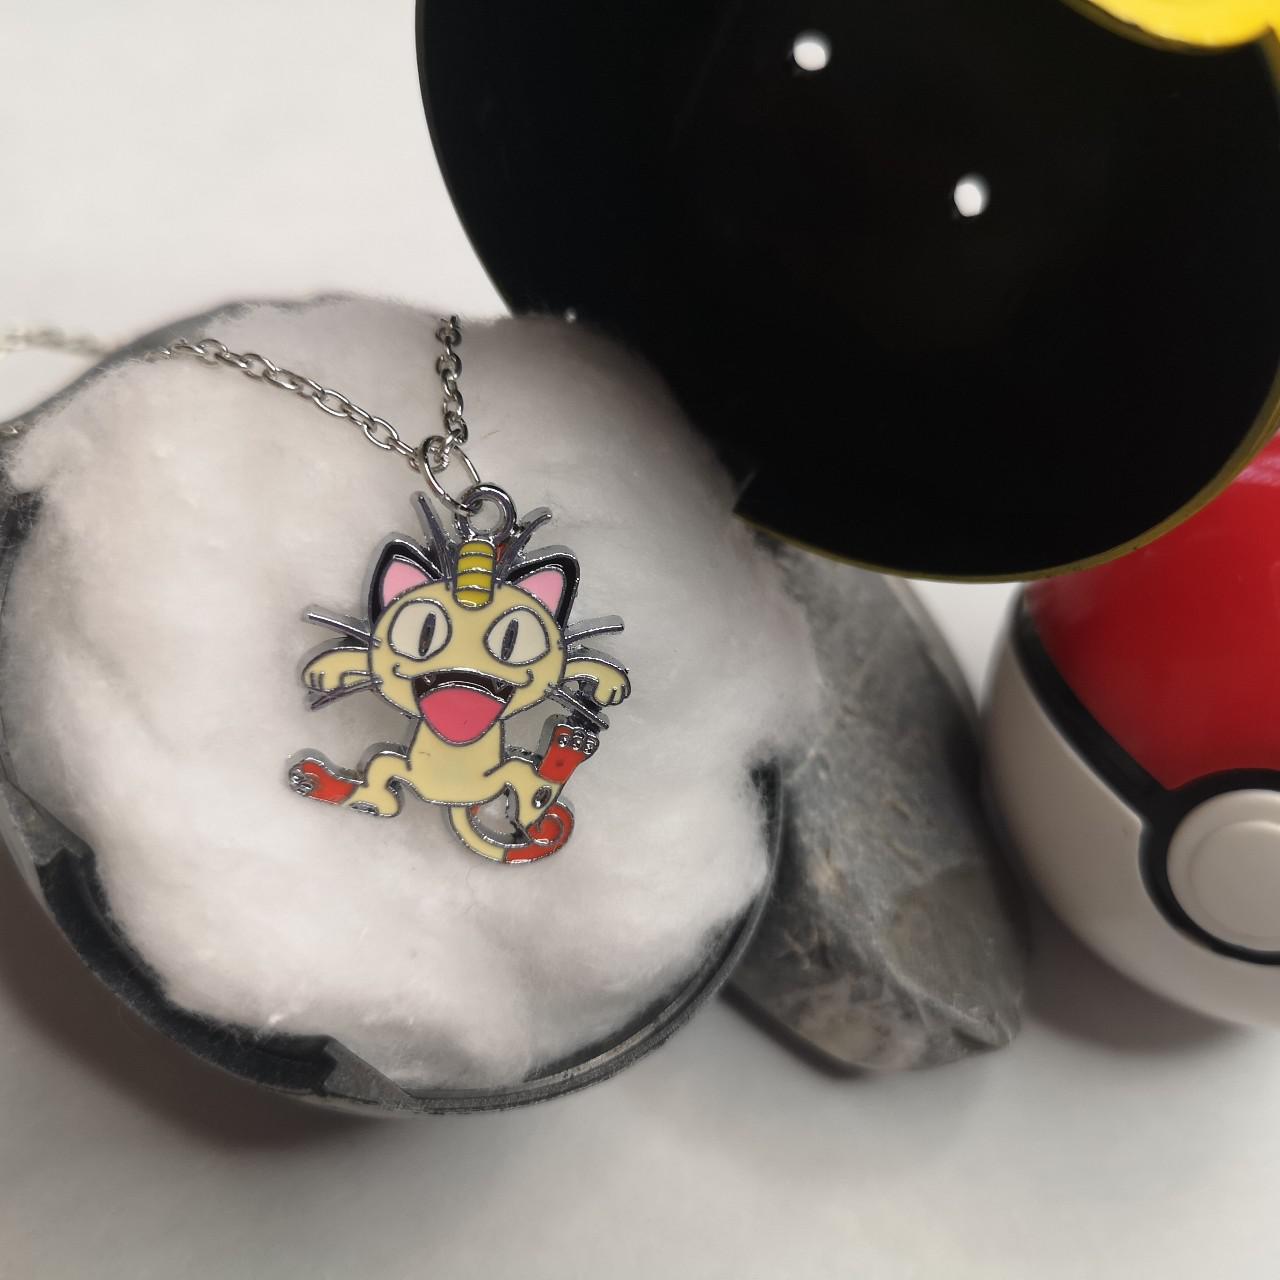 Product Image 1 - Flareon Pendant Pokemon Pendant Necklace
Customise